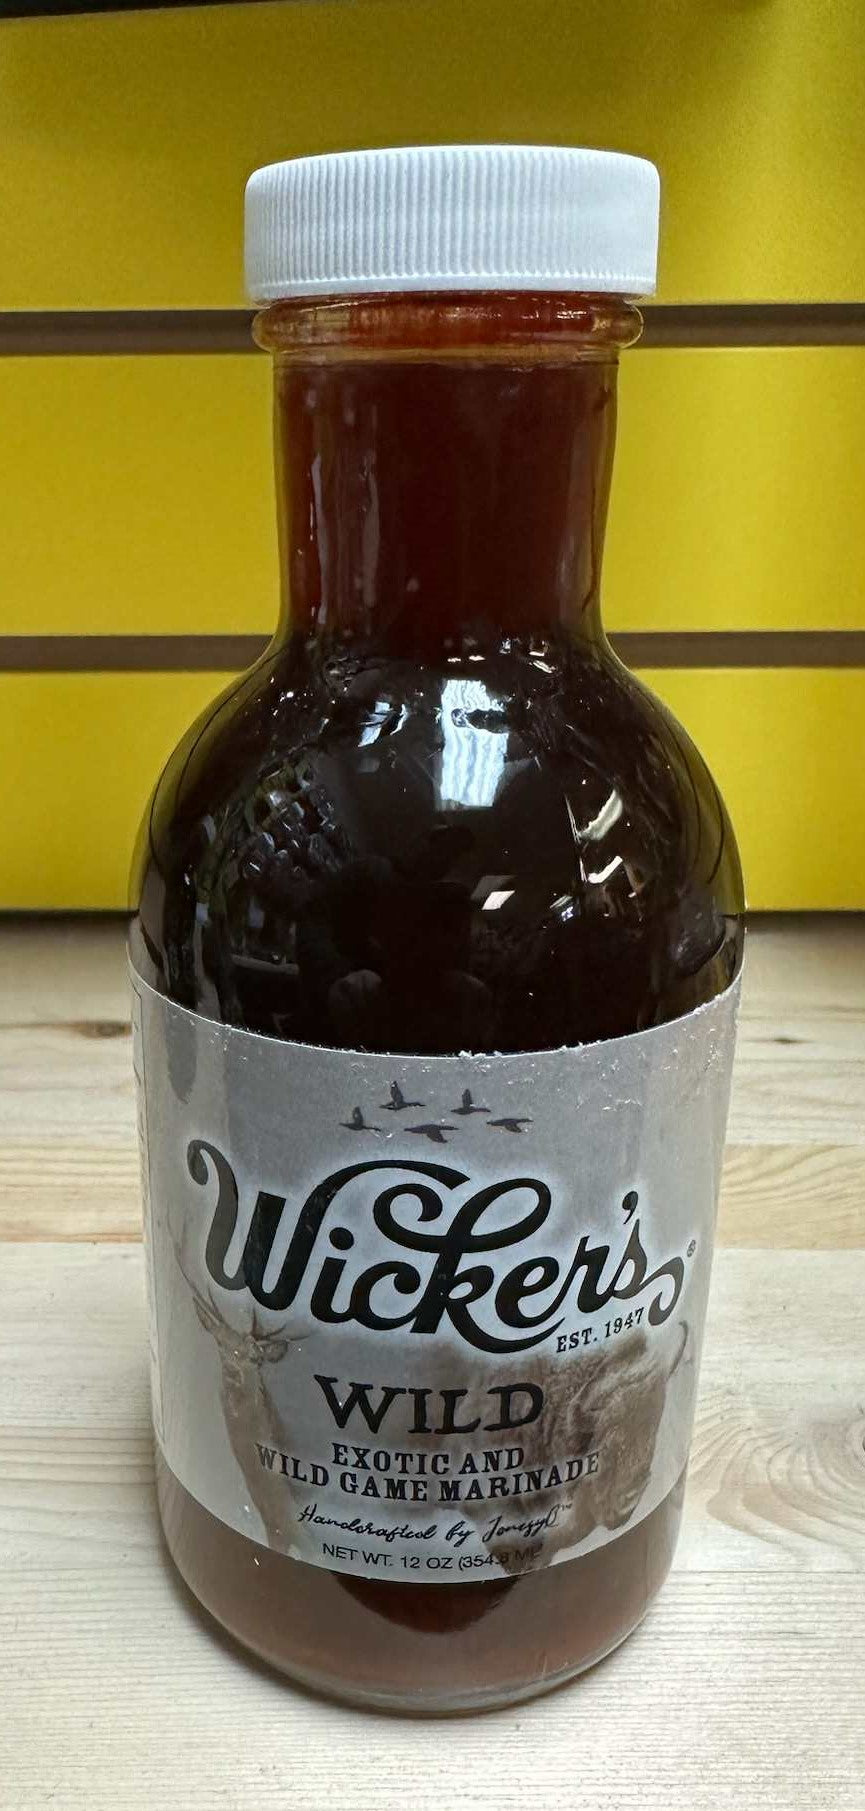 Wicker's Wild 12oz